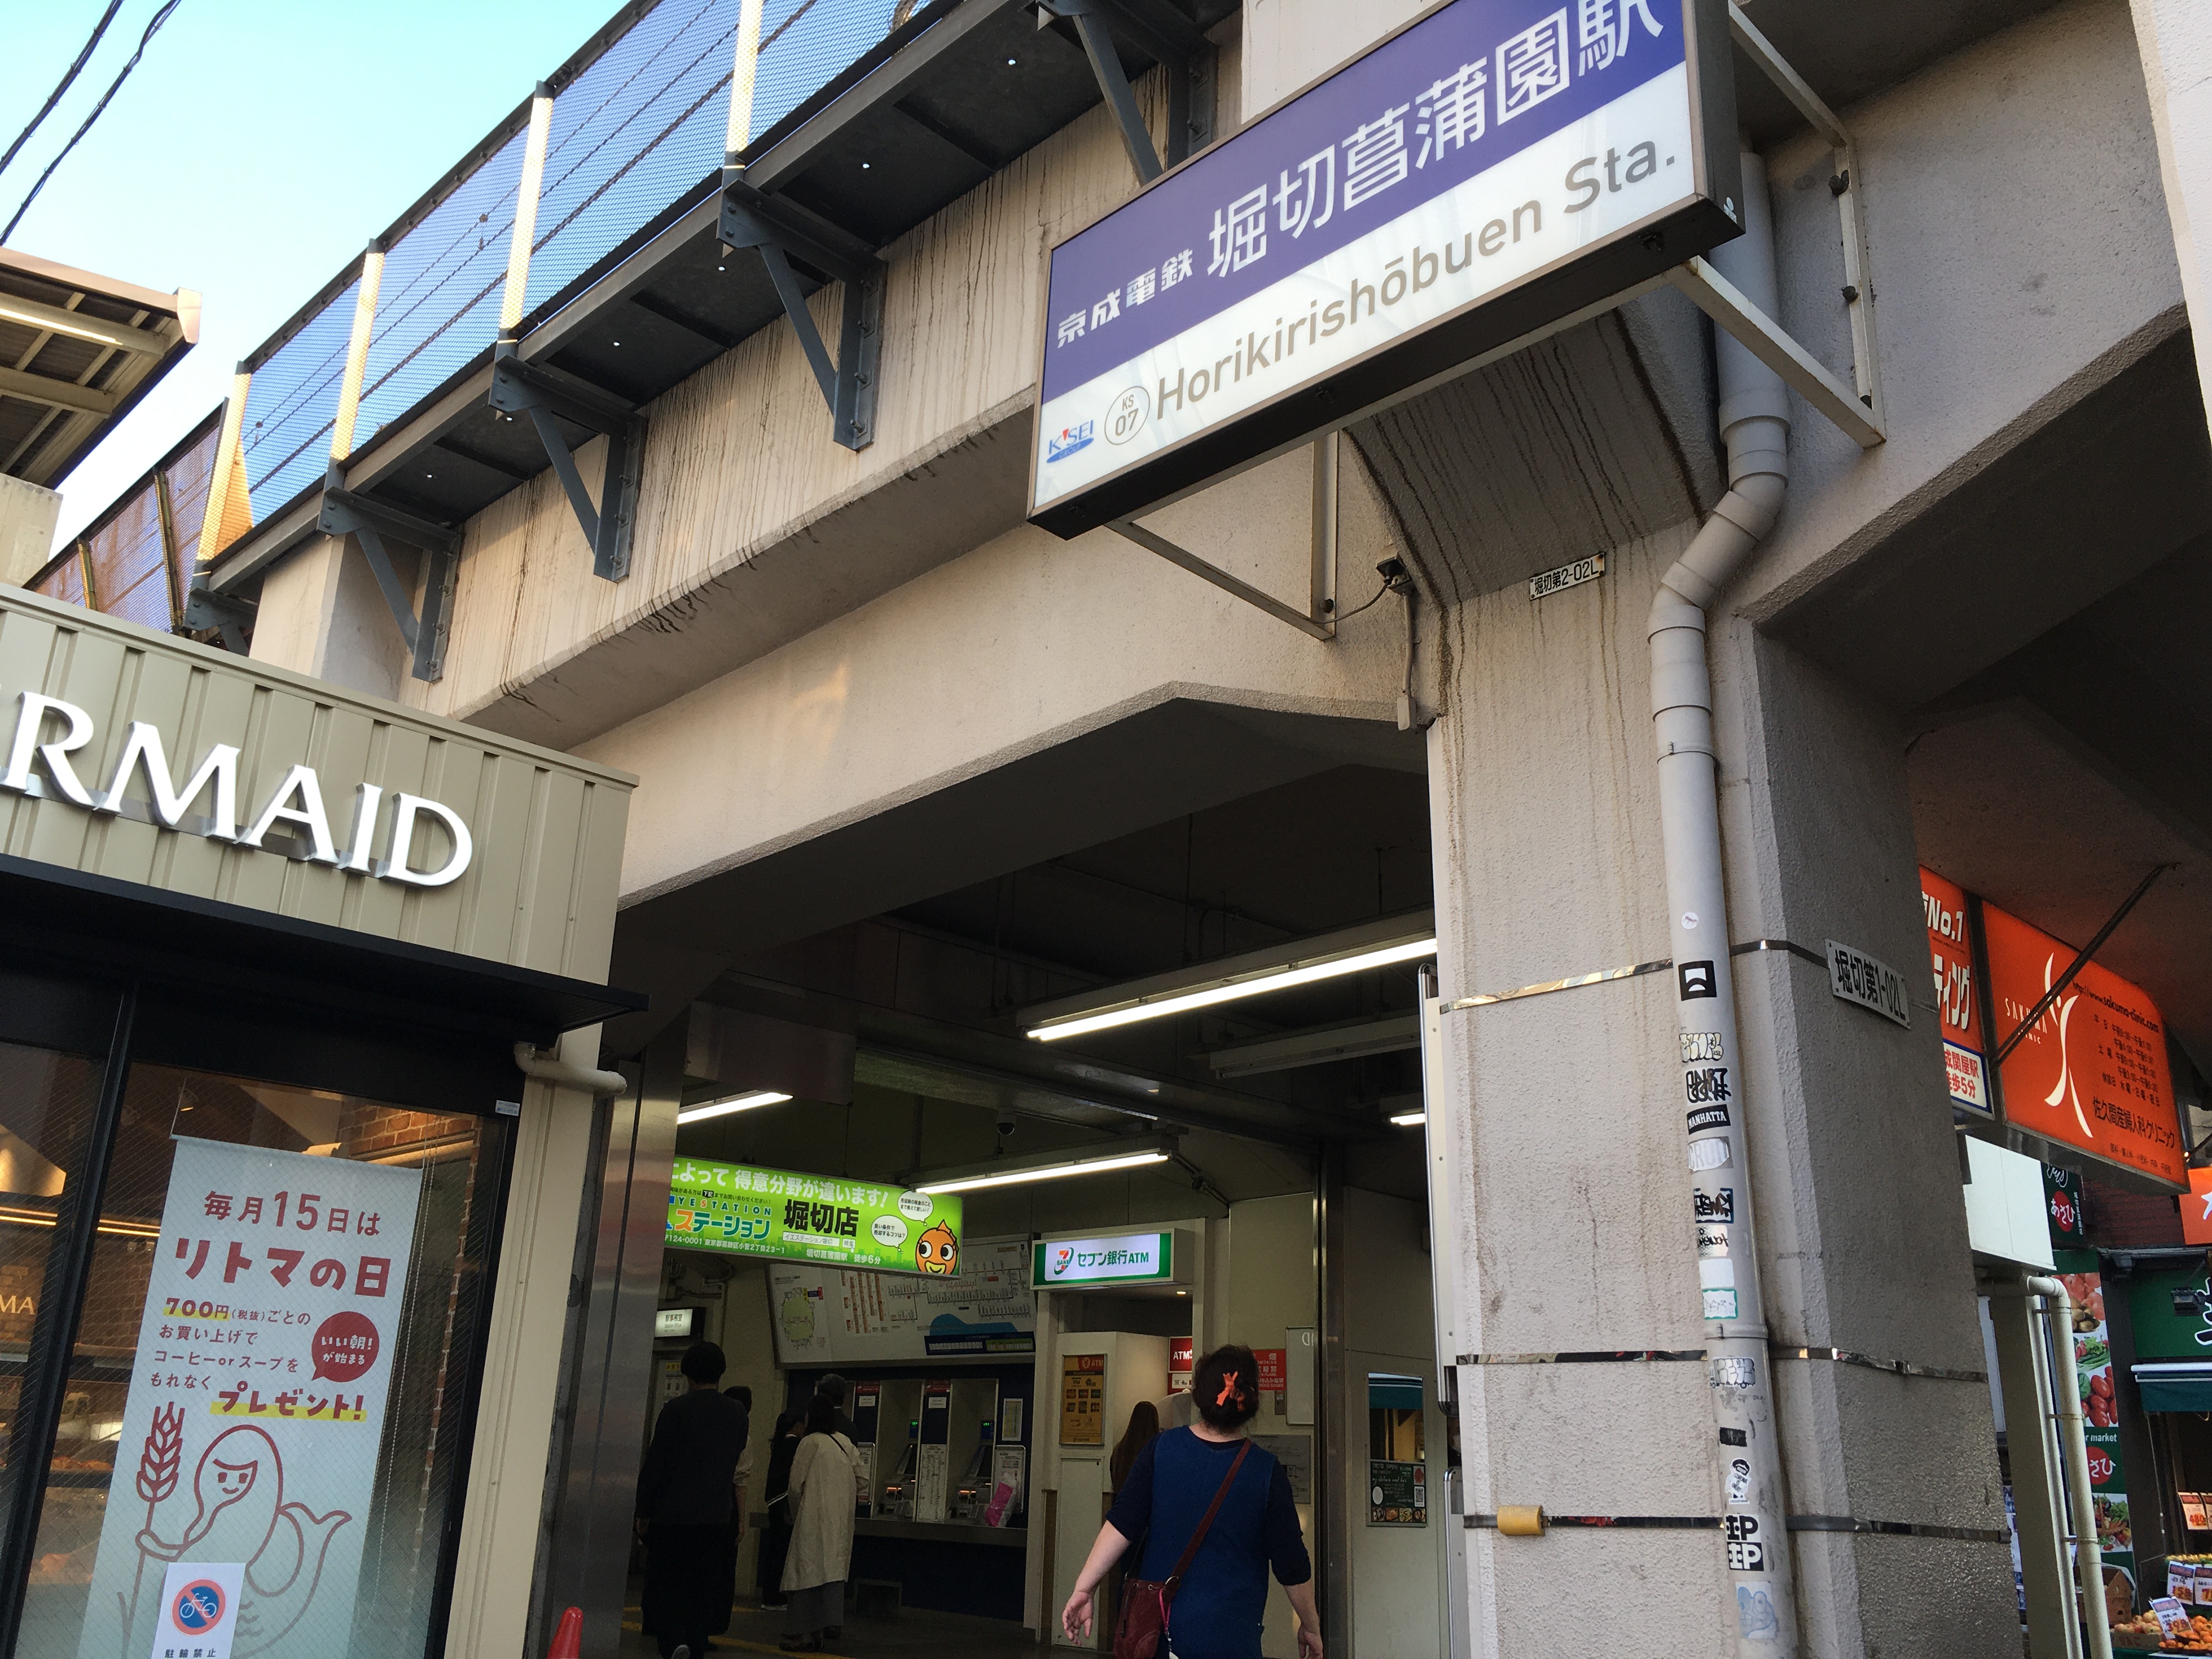 堀切菖蒲園駅の改札口です